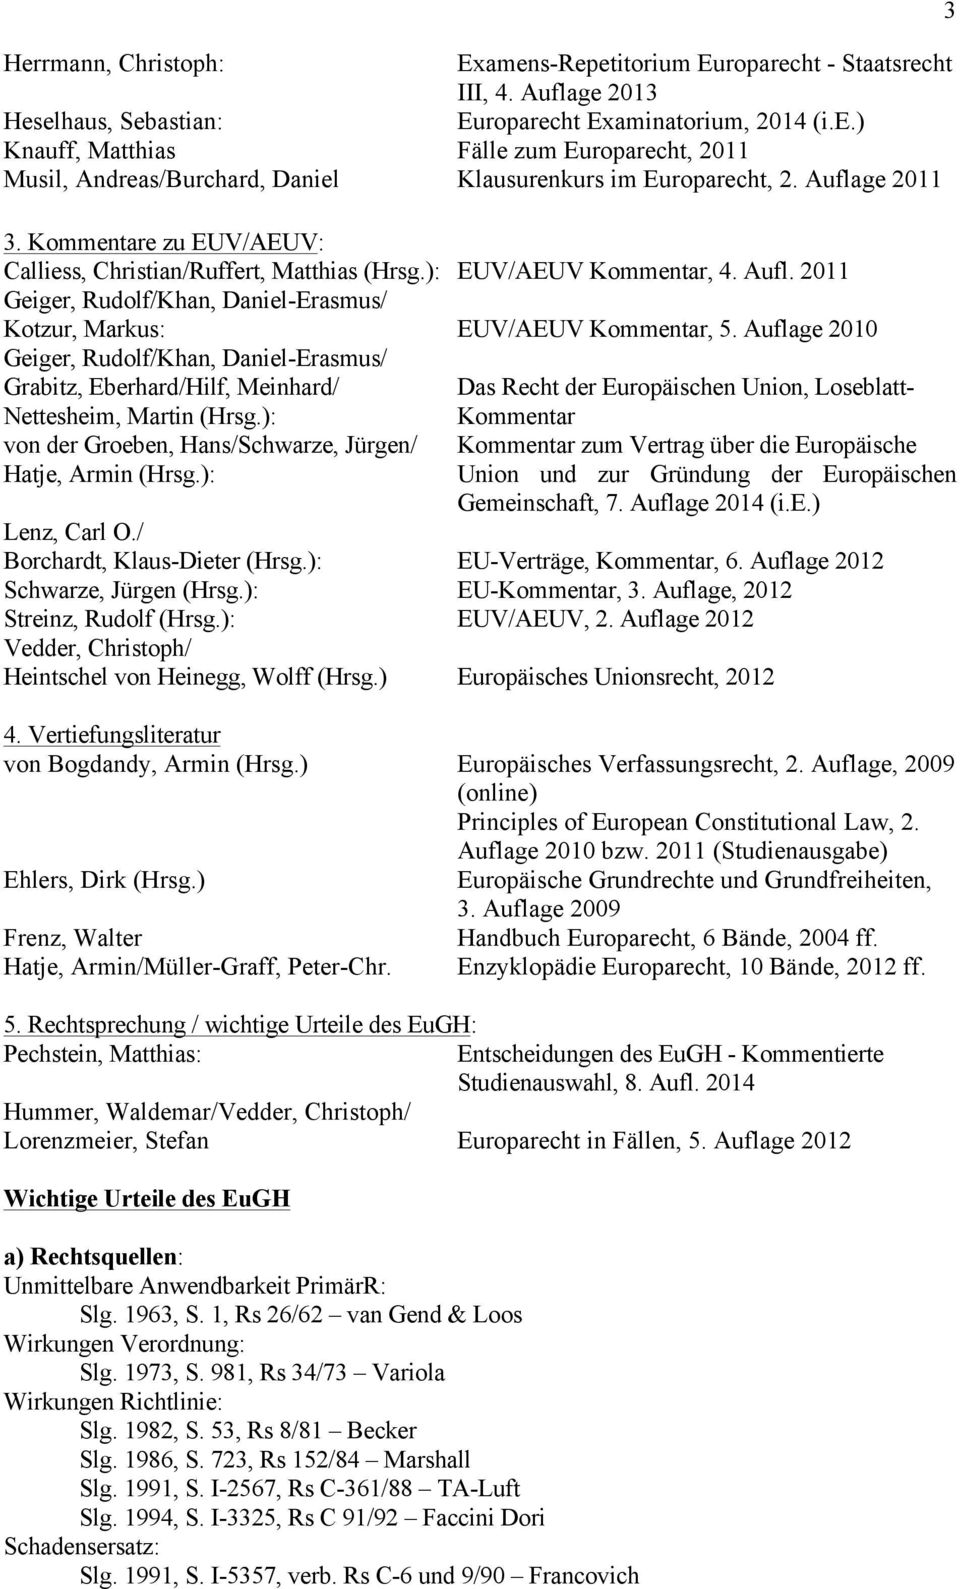 Auflage 2010 Geiger, Rudolf/Khan, Daniel-Erasmus/ Grabitz, Eberhard/Hilf, Meinhard/ Das Recht der Europäischen Union, Loseblatt- Nettesheim, Martin (Hrsg.